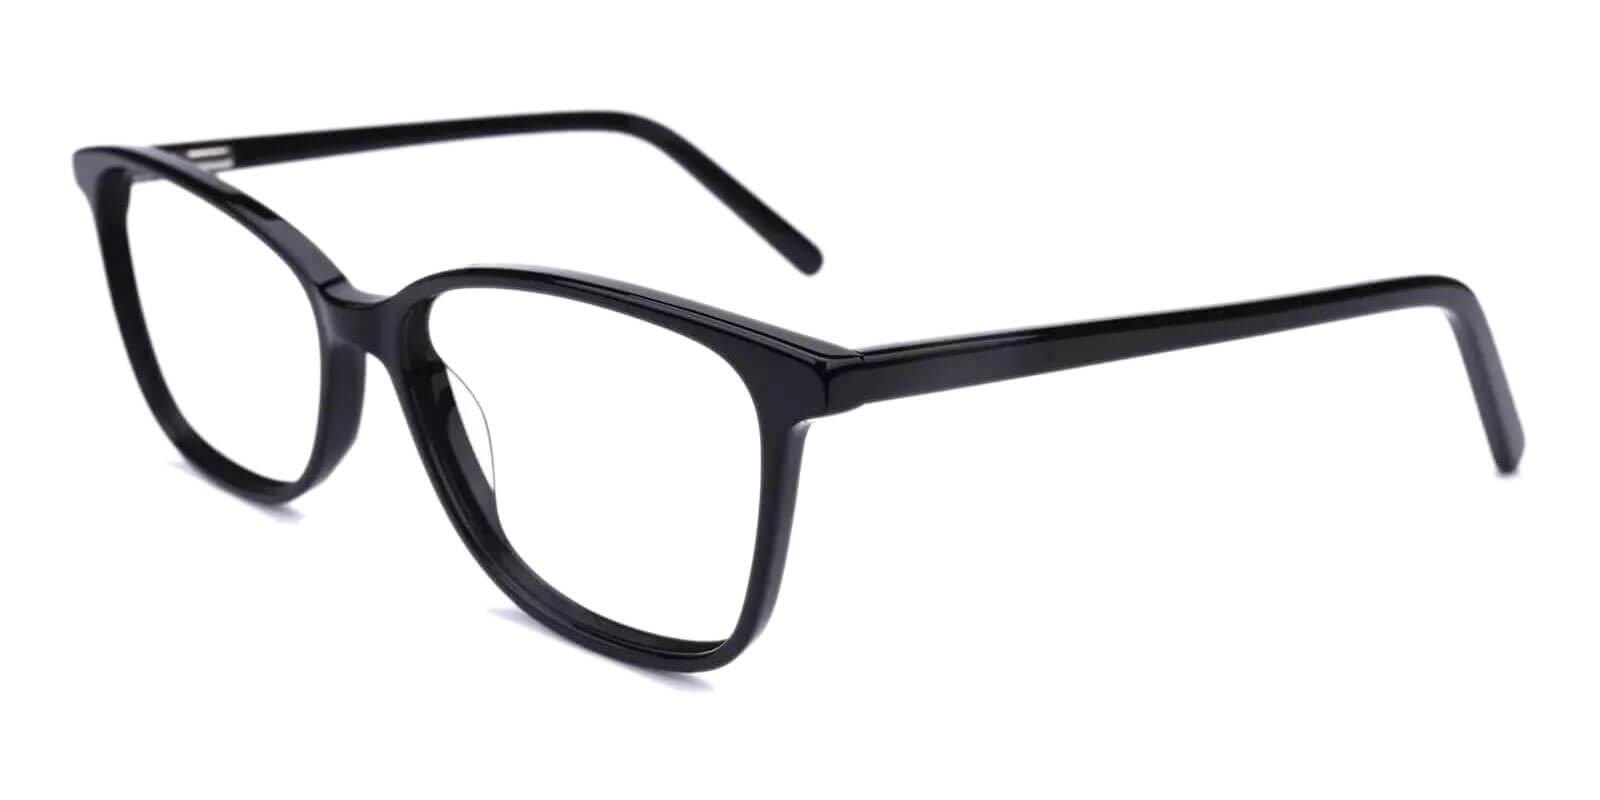 Belize Black Acetate Eyeglasses , SpringHinges , UniversalBridgeFit Frames from ABBE Glasses